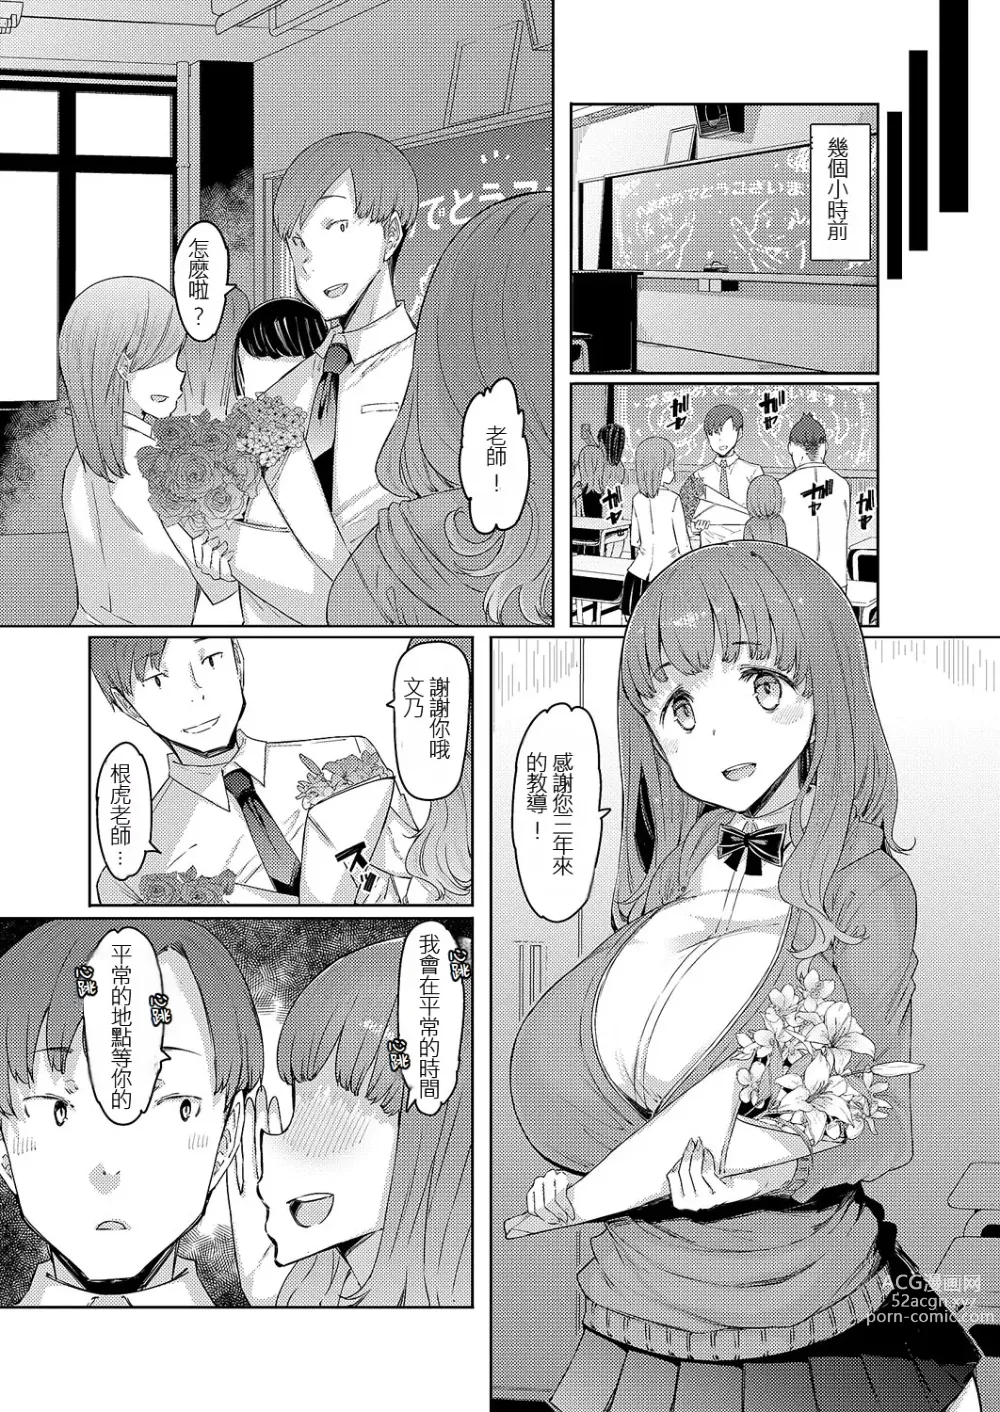 Page 4 of manga Harumi no Sotsugyoshiki